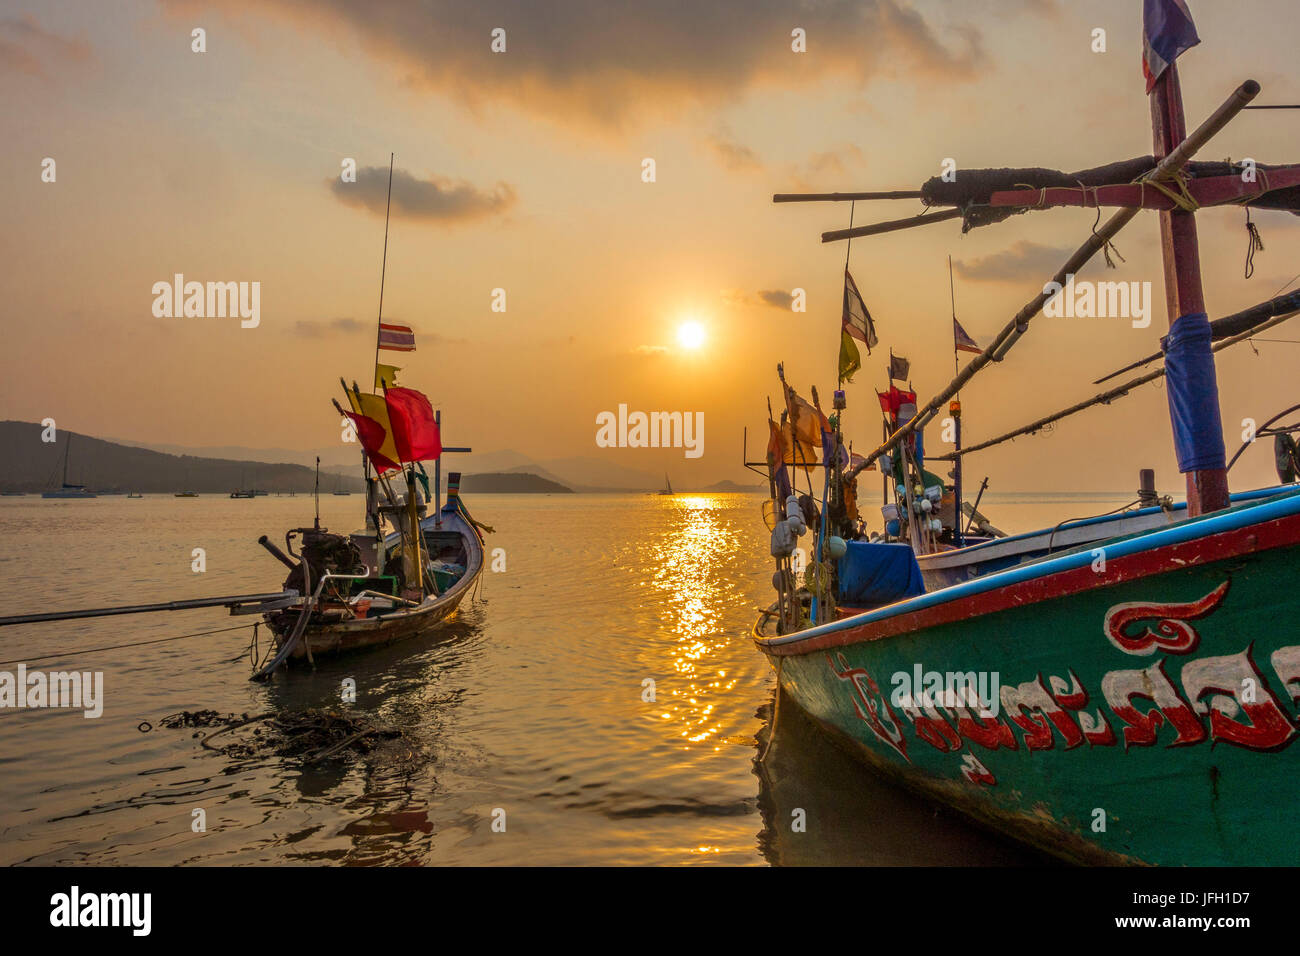 Longtail barche sulla spiaggia, sunrise in Spiaggia Bo Phut, isola di Ko Samui, Thailandia, Asia Foto Stock